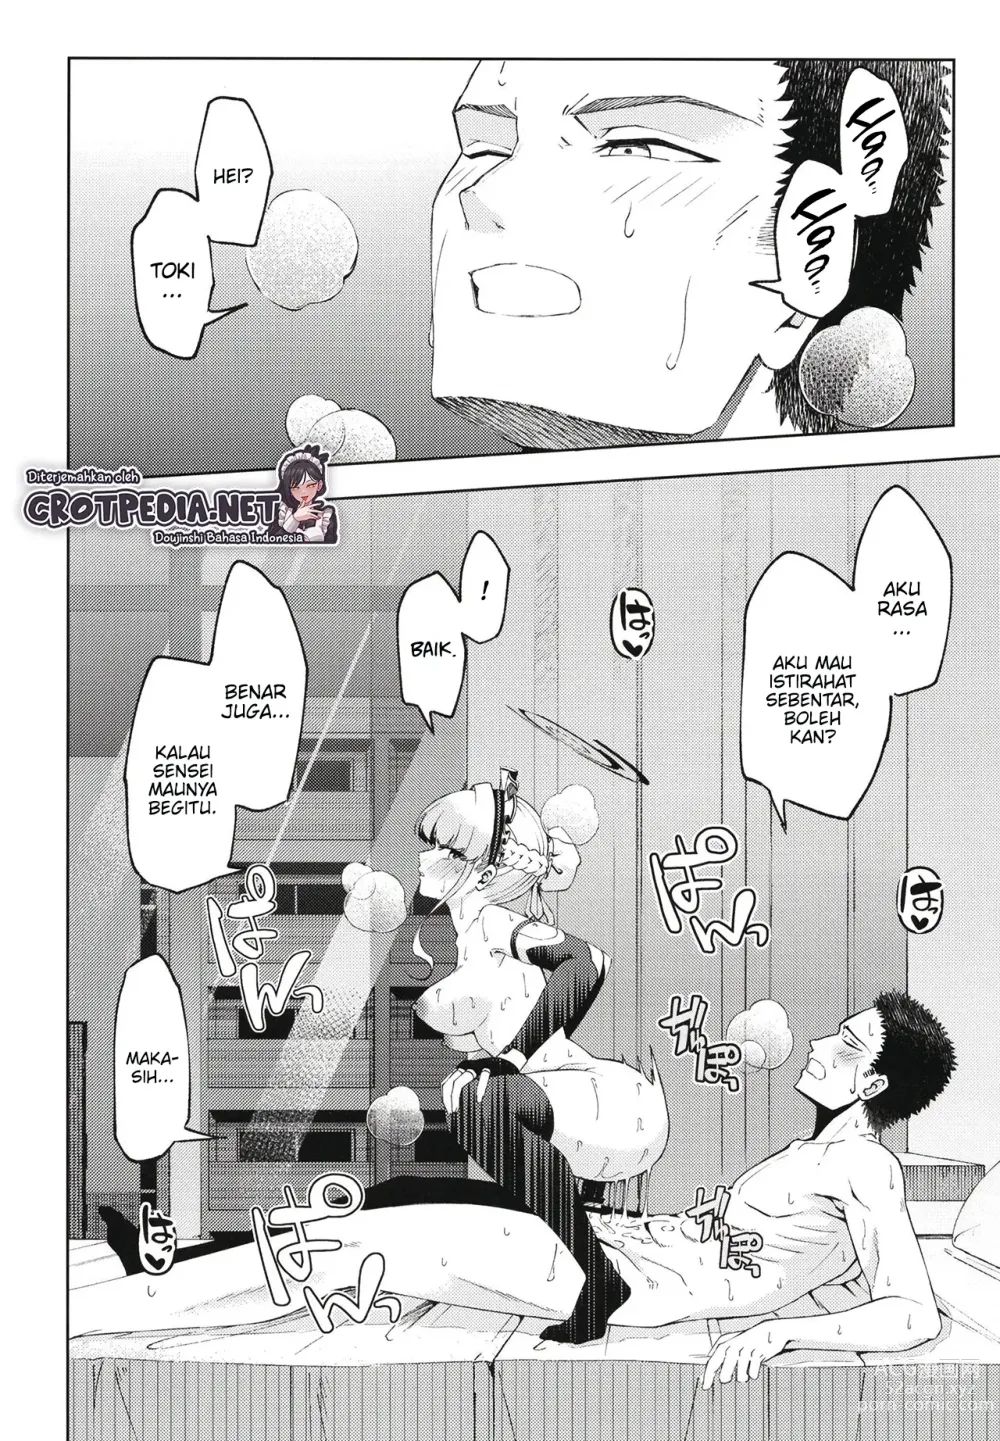 Page 24 of doujinshi Toki, Tokidoki